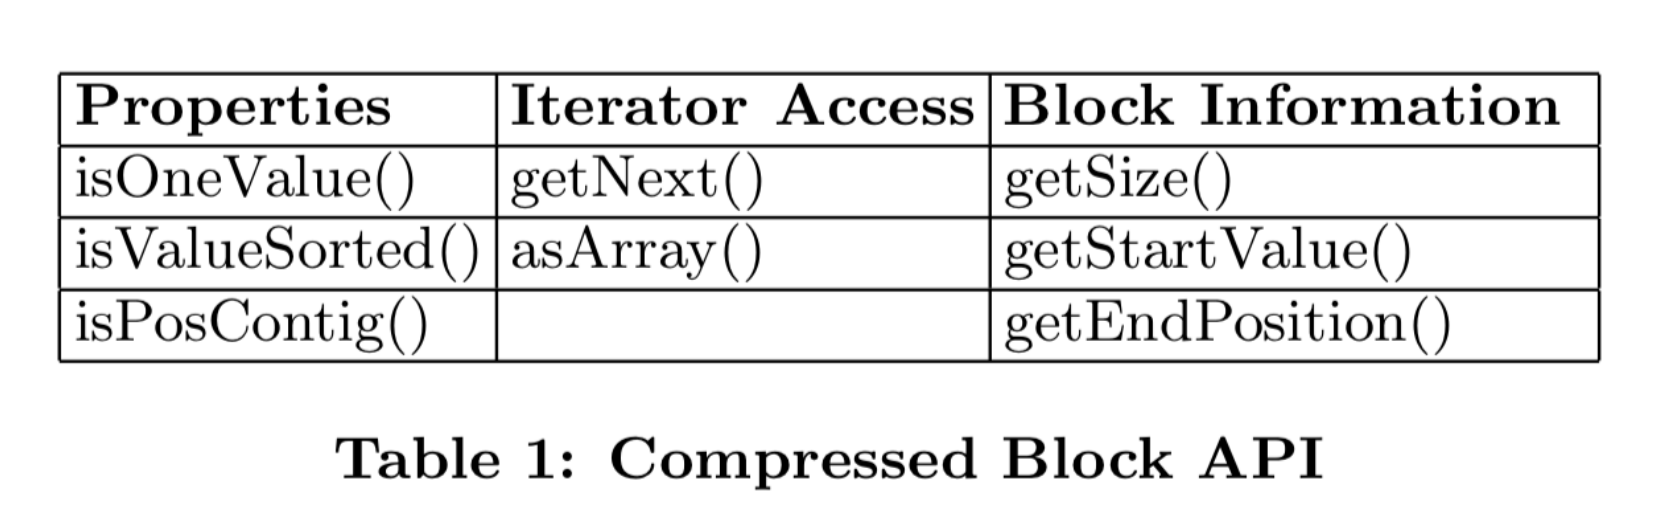 Compressed blocks API